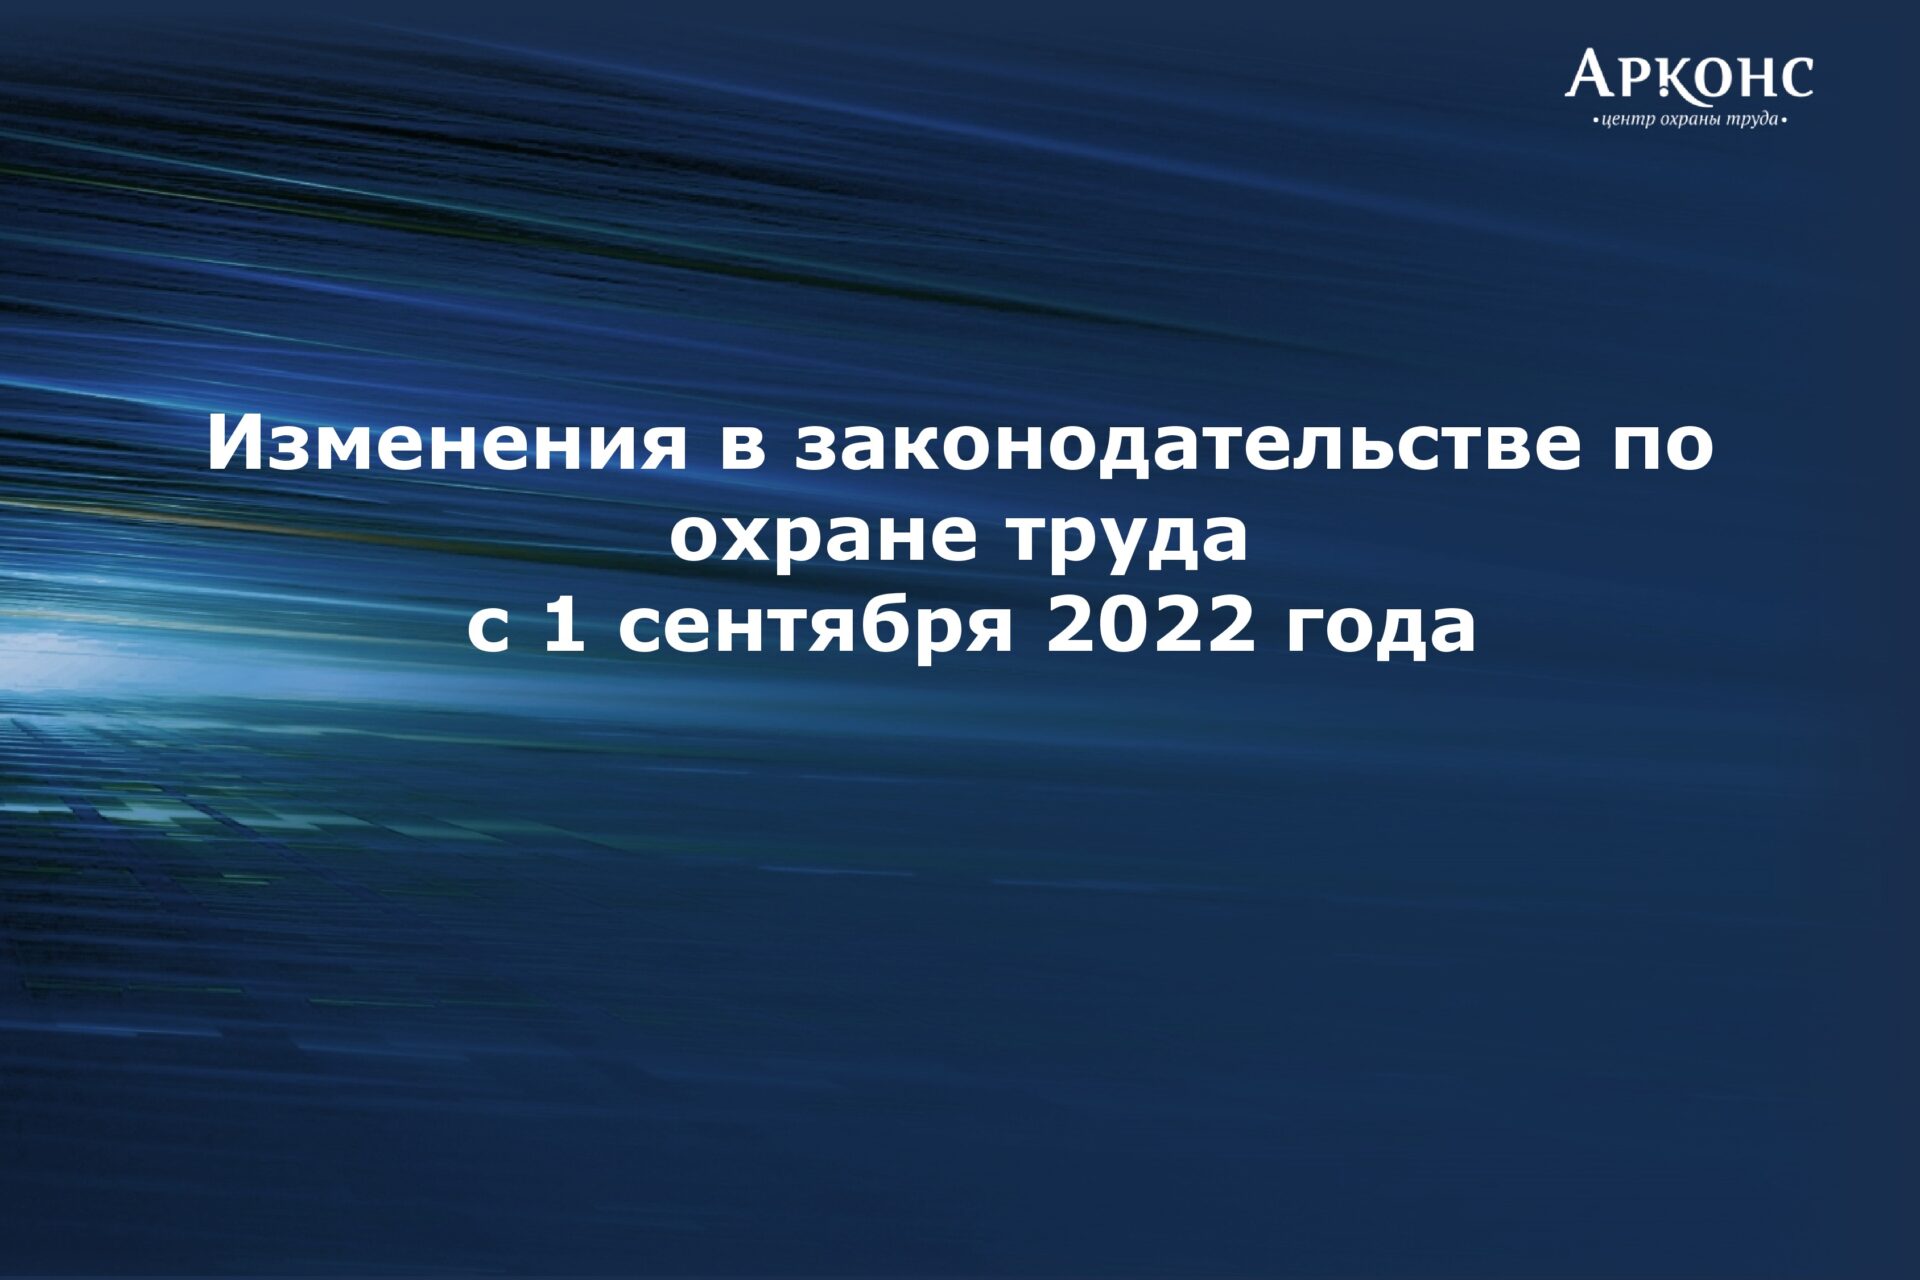 Презентация по изменениям правил охраны труда с 2022 года